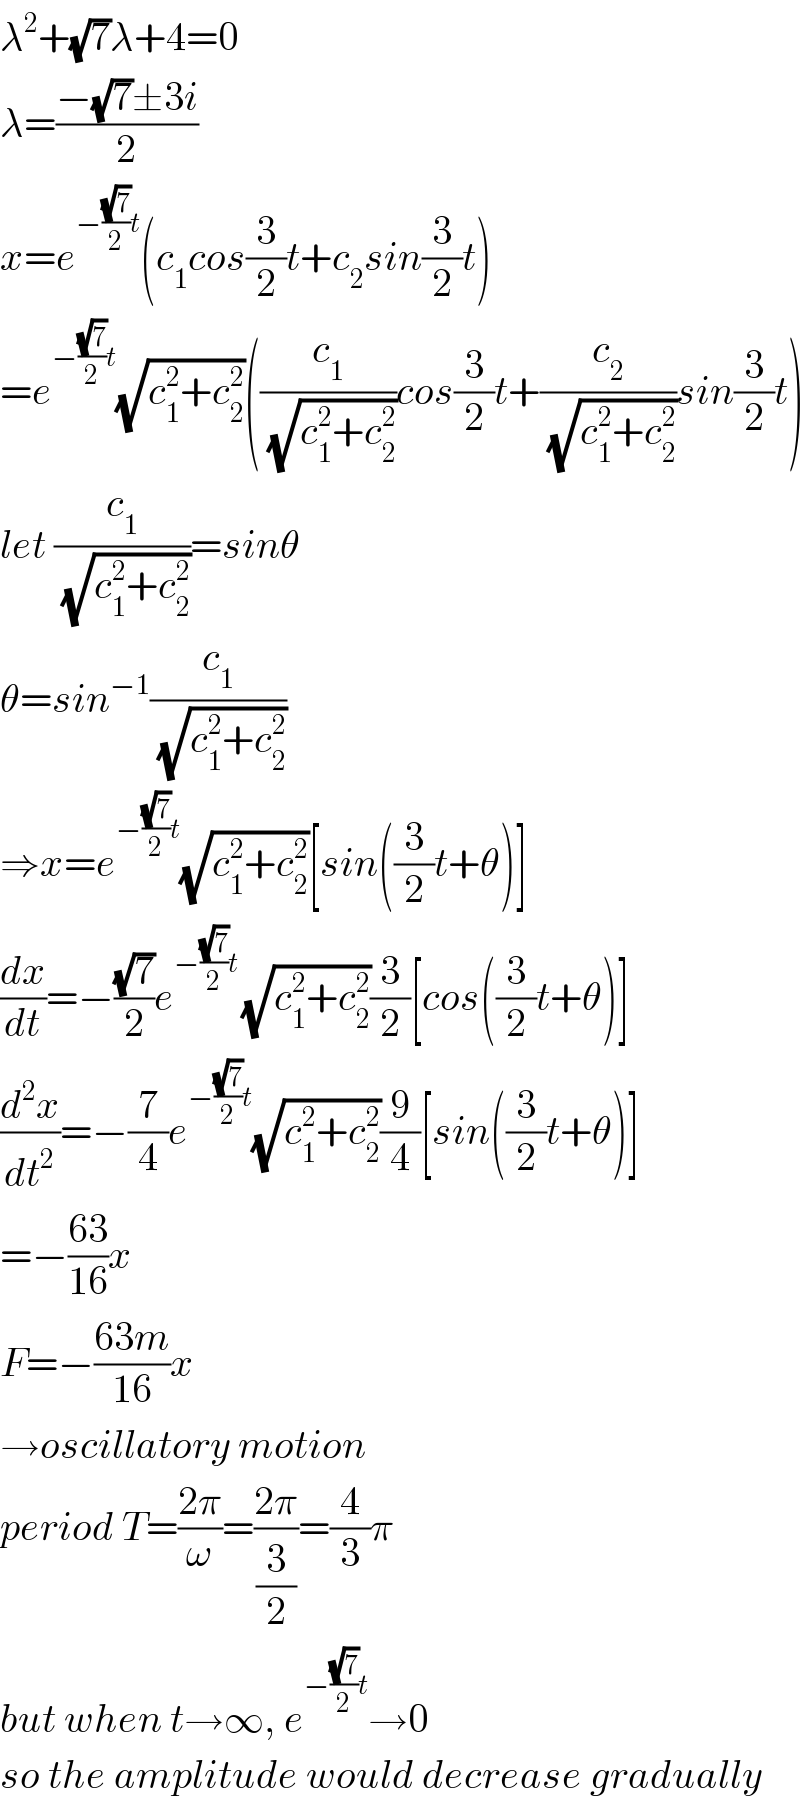 λ^2 +(√7)λ+4=0  λ=((−(√7)±3i)/2)  x=e^(−((√7)/2)t) (c_1 cos(3/2)t+c_2 sin(3/2)t)  =e^(−((√7)/2)t) (√(c_1 ^2 +c_2 ^2 ))((c_1 /(√(c_1 ^2 +c_2 ^2 )))cos(3/2)t+(c_2 /(√(c_1 ^2 +c_2 ^2 )))sin(3/2)t)  let (c_1 /(√(c_1 ^2 +c_2 ^2 )))=sinθ  θ=sin^(−1) (c_1 /(√(c_1 ^2 +c_2 ^2 )))  ⇒x=e^(−((√7)/2)t) (√(c_1 ^2 +c_2 ^2 ))[sin((3/2)t+θ)]  (dx/dt)=−((√7)/2)e^(−((√7)/2)t ) (√(c_1 ^2 +c_2 ^2 ))(3/2)[cos((3/2)t+θ)]  (d^2 x/dt^2 )=−(7/4)e^(−((√7)/2)t) (√(c_1 ^2 +c_2 ^2 ))(9/4)[sin((3/2)t+θ)]  =−((63)/(16))x  F=−((63m)/(16))x  →oscillatory motion  period T=((2π)/ω)=((2π)/(3/2))=(4/3)π  but when t→∞, e^(−((√7)/2)t) →0  so the amplitude would decrease gradually  